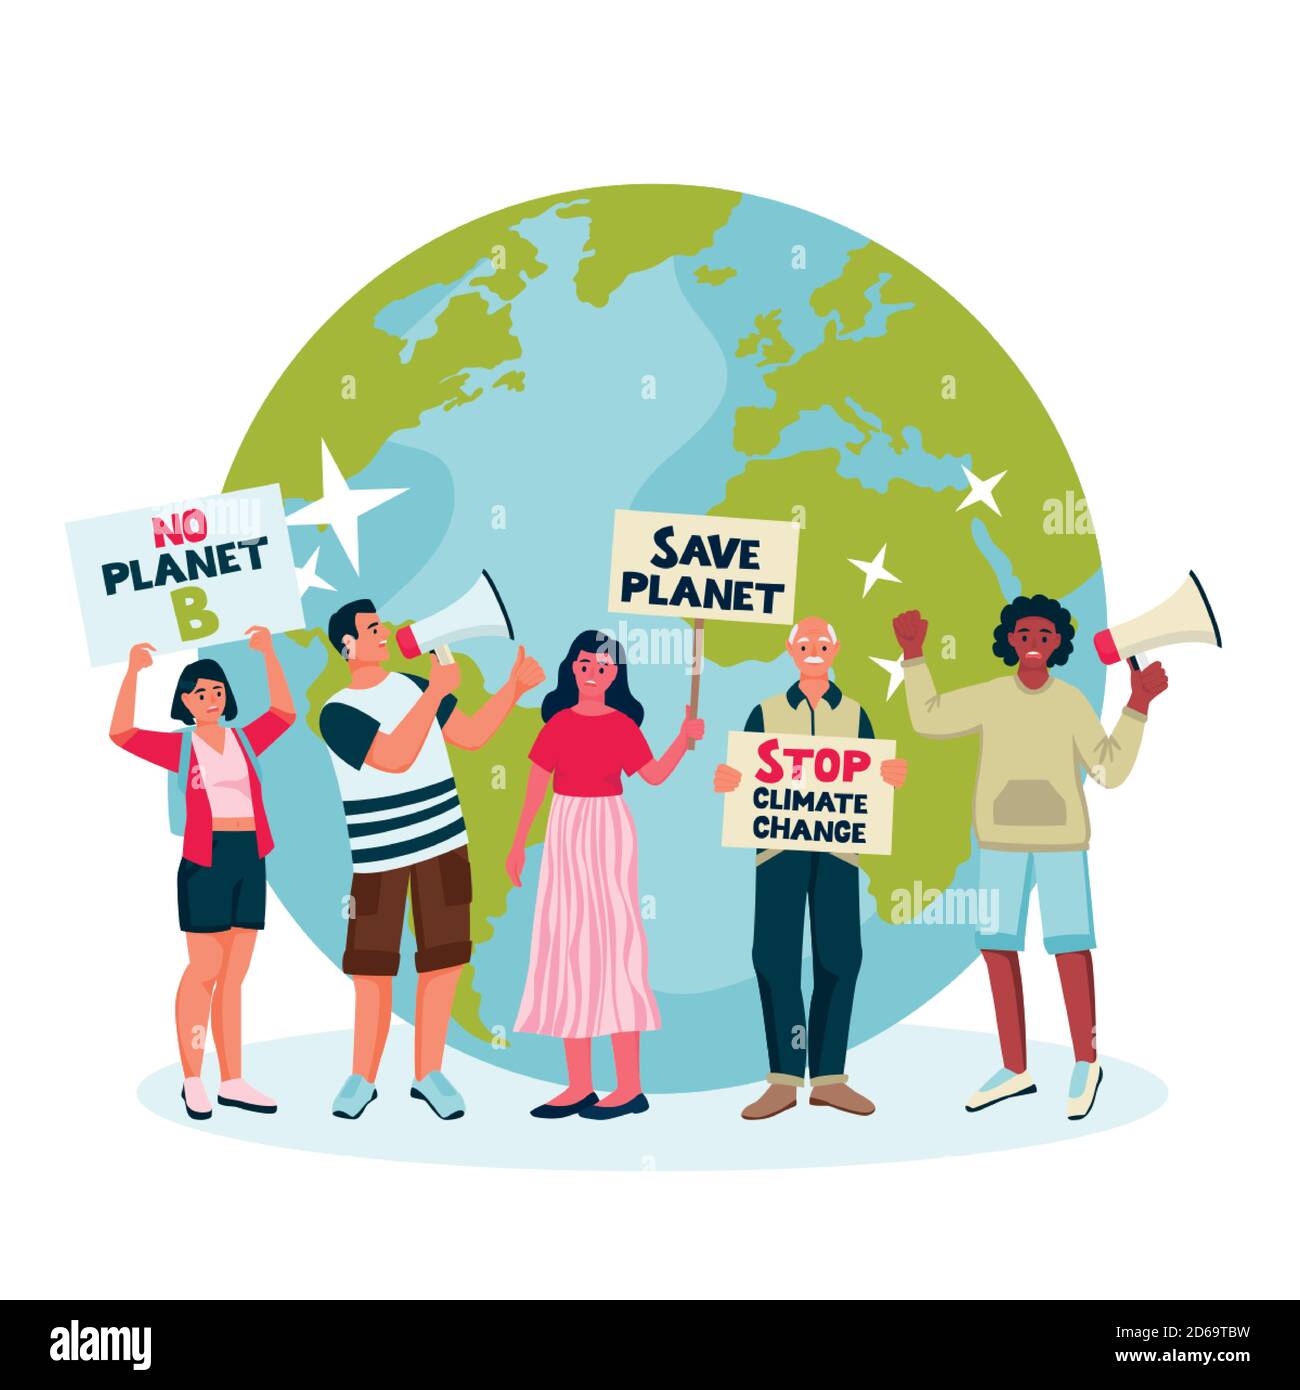 Umweltaktivisten machen auf den Klimawandel aufmerksam. Vector flache Cartoon-Illustration von protestierenden Öko-Aktivisten mit Plakaten, Fahnen, Loudspeake Stock Vektor